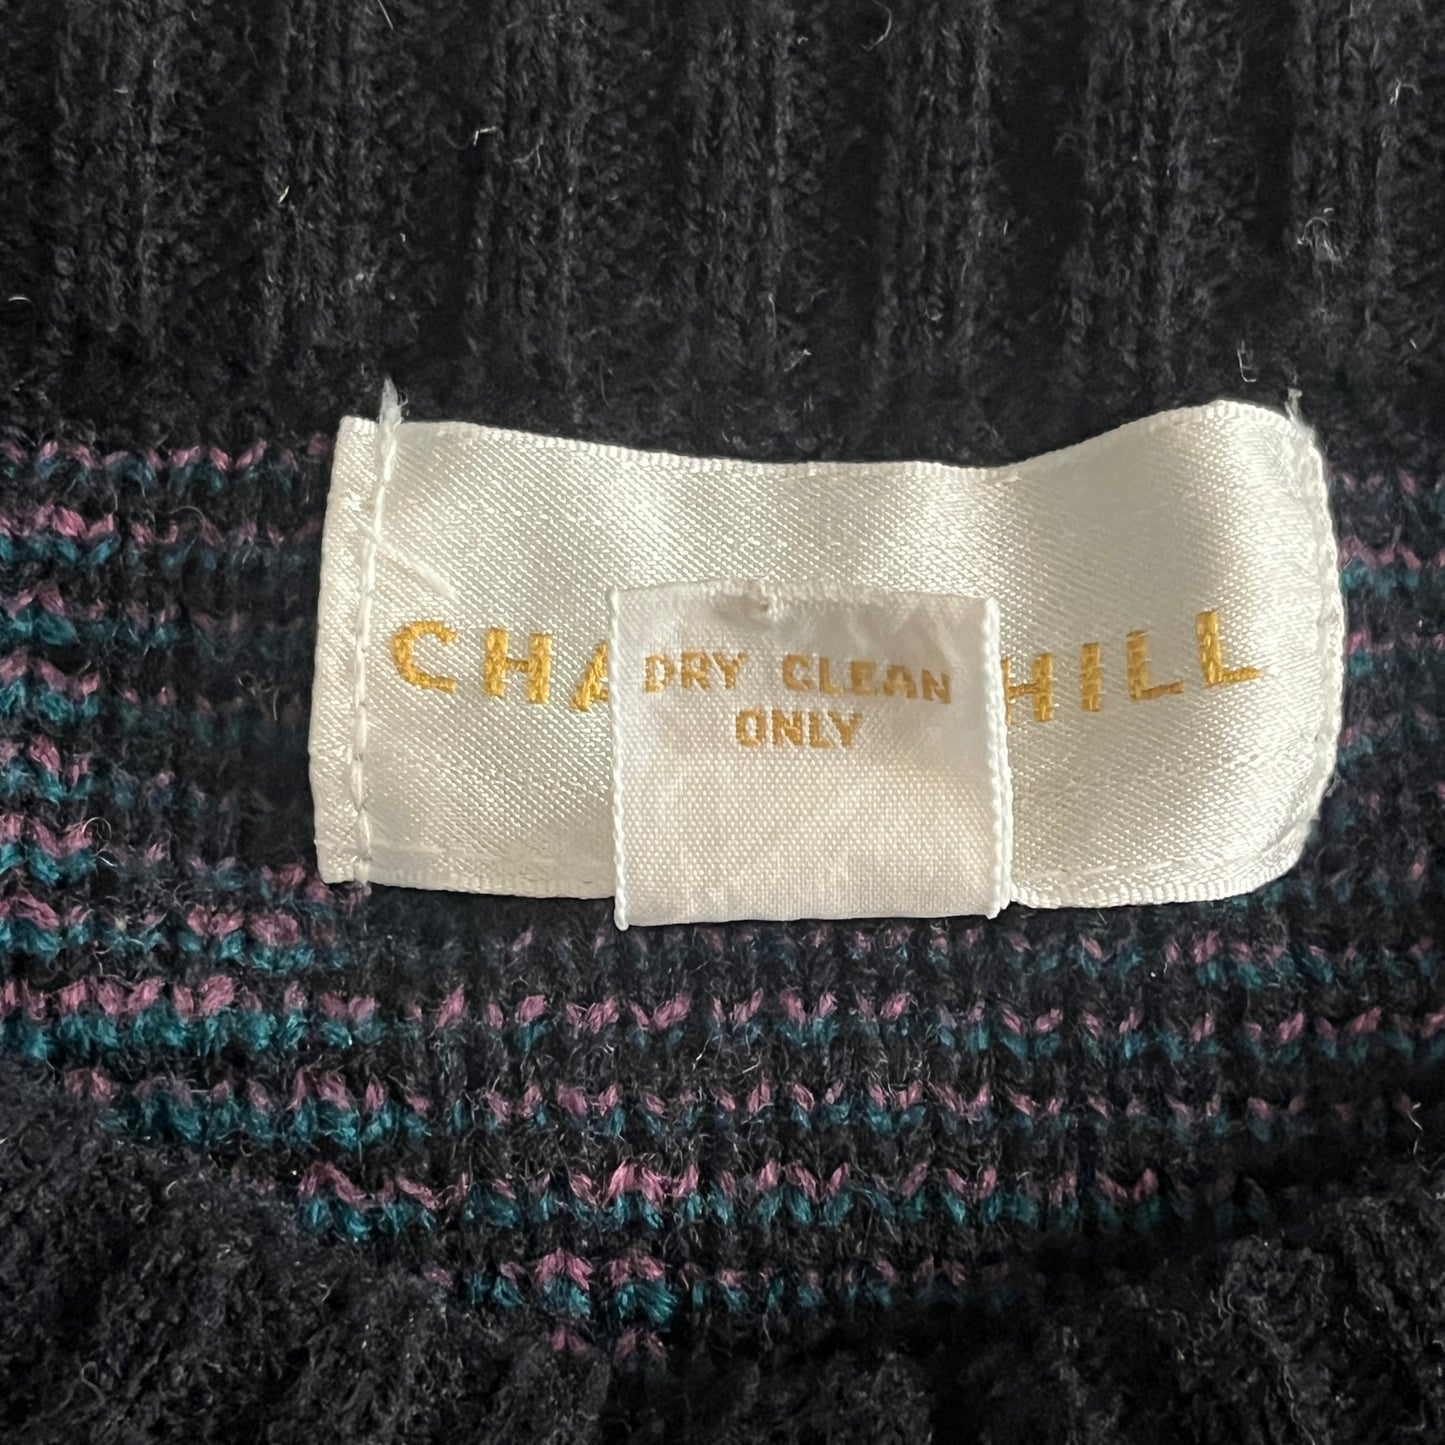 CHAPEL HILL 韓国製レザー切替 モード ブラック ニットセーター